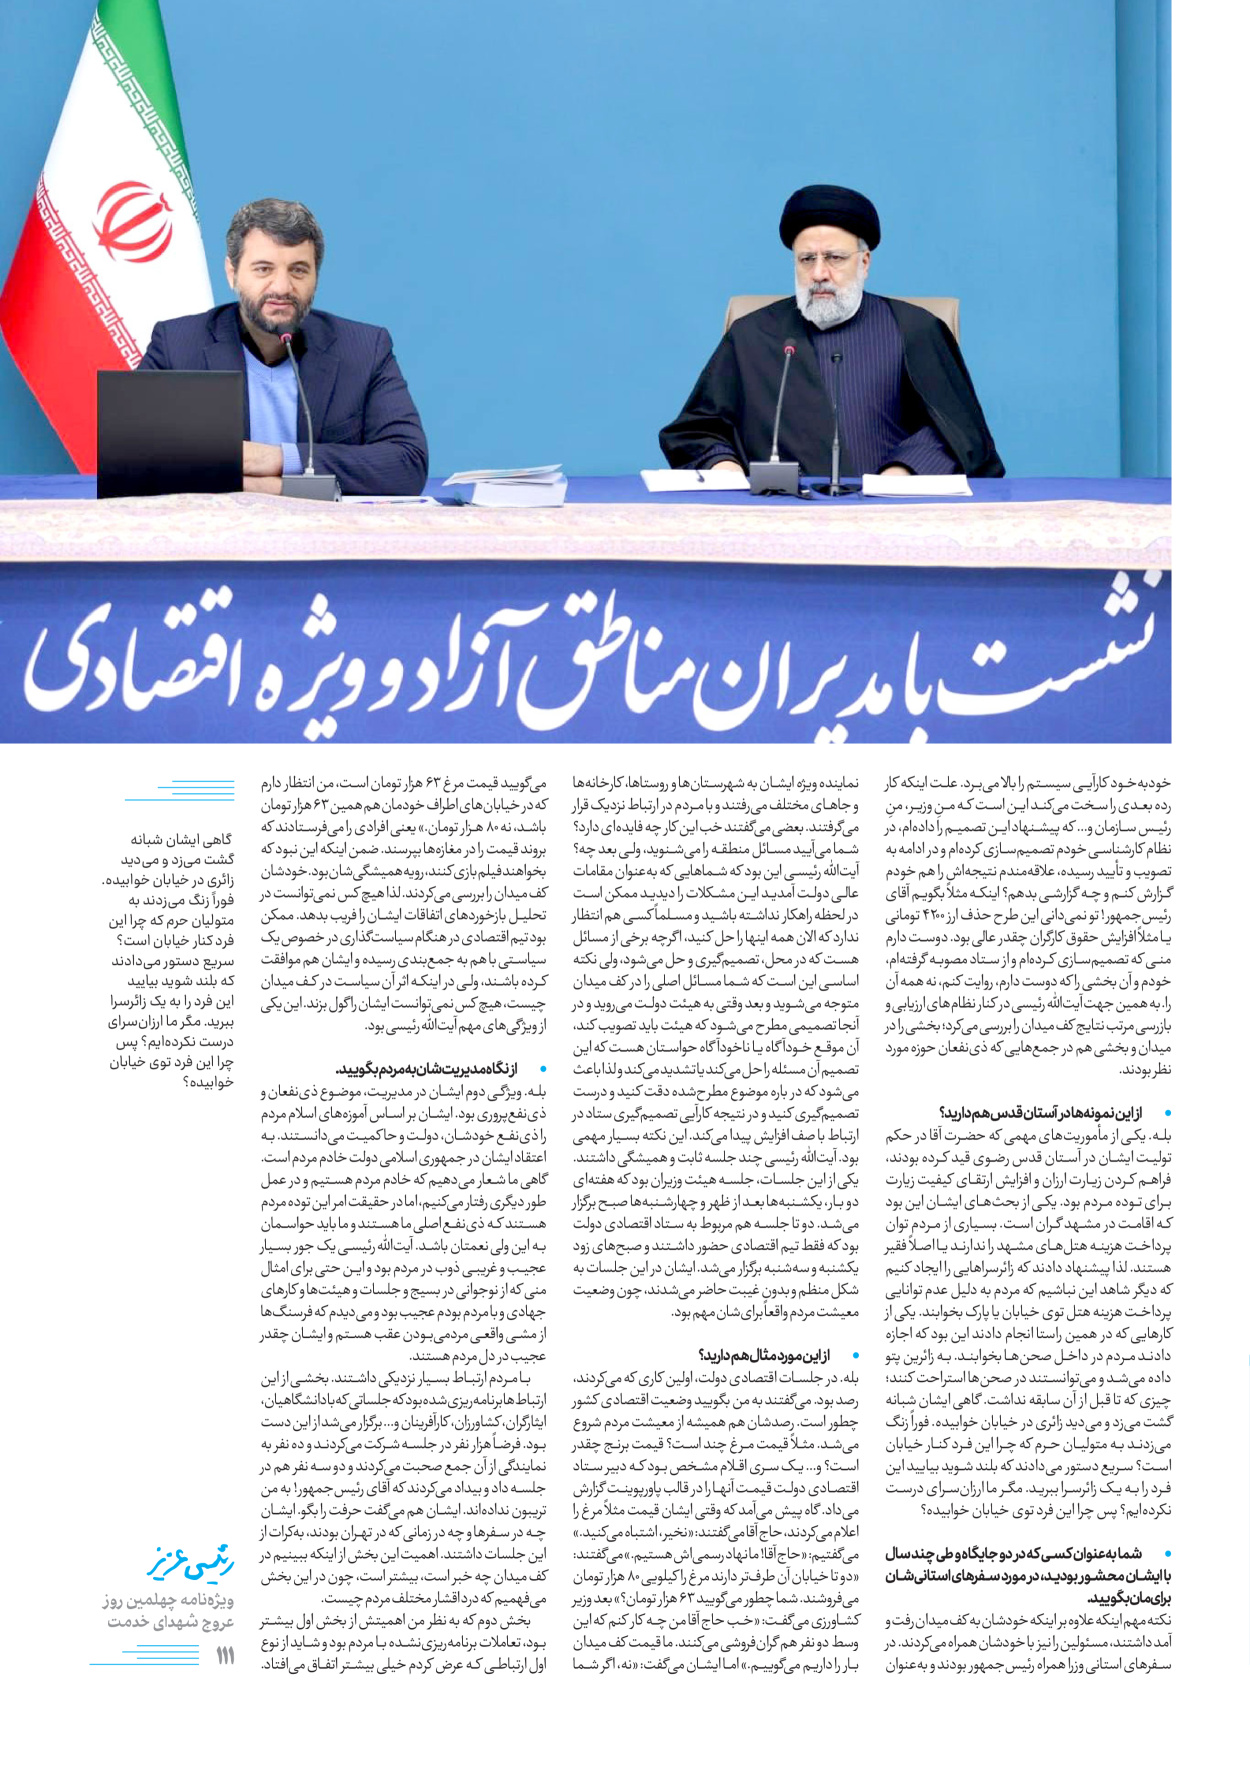 روزنامه ایران - ویژه نامه رییسی عزیز - ۰۴ تیر ۱۴۰۳ - صفحه ۱۱۱